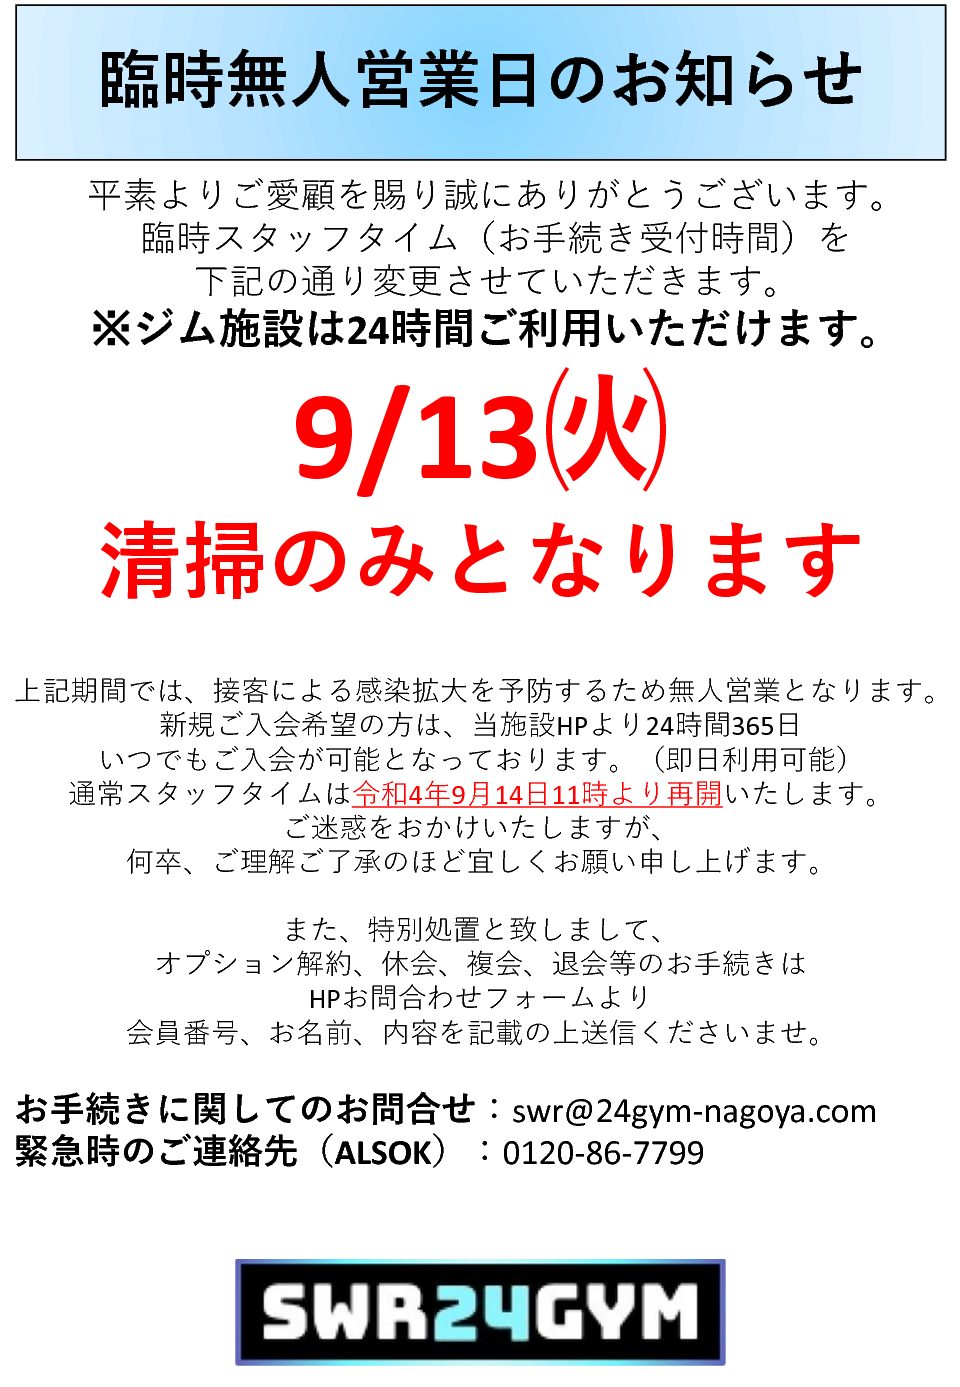 【小牧店】9/13臨時無人営業日のお知らせ